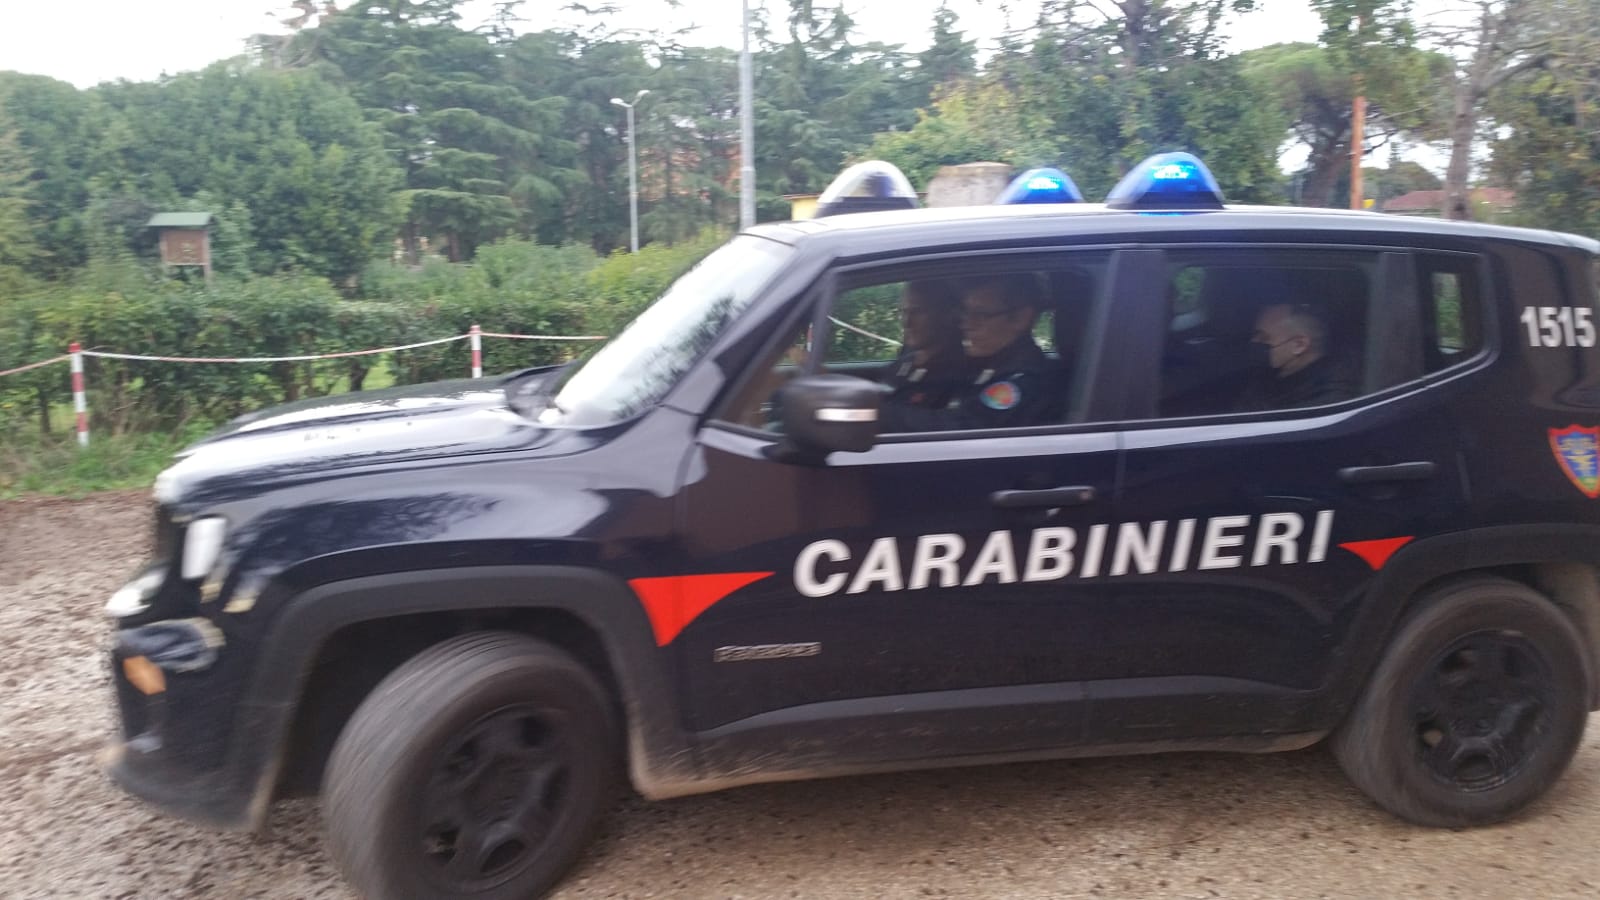 Sorpresi dai Carabinieri mentre alimentavano un rogo tossico utilizzando un escavatore sequestrato